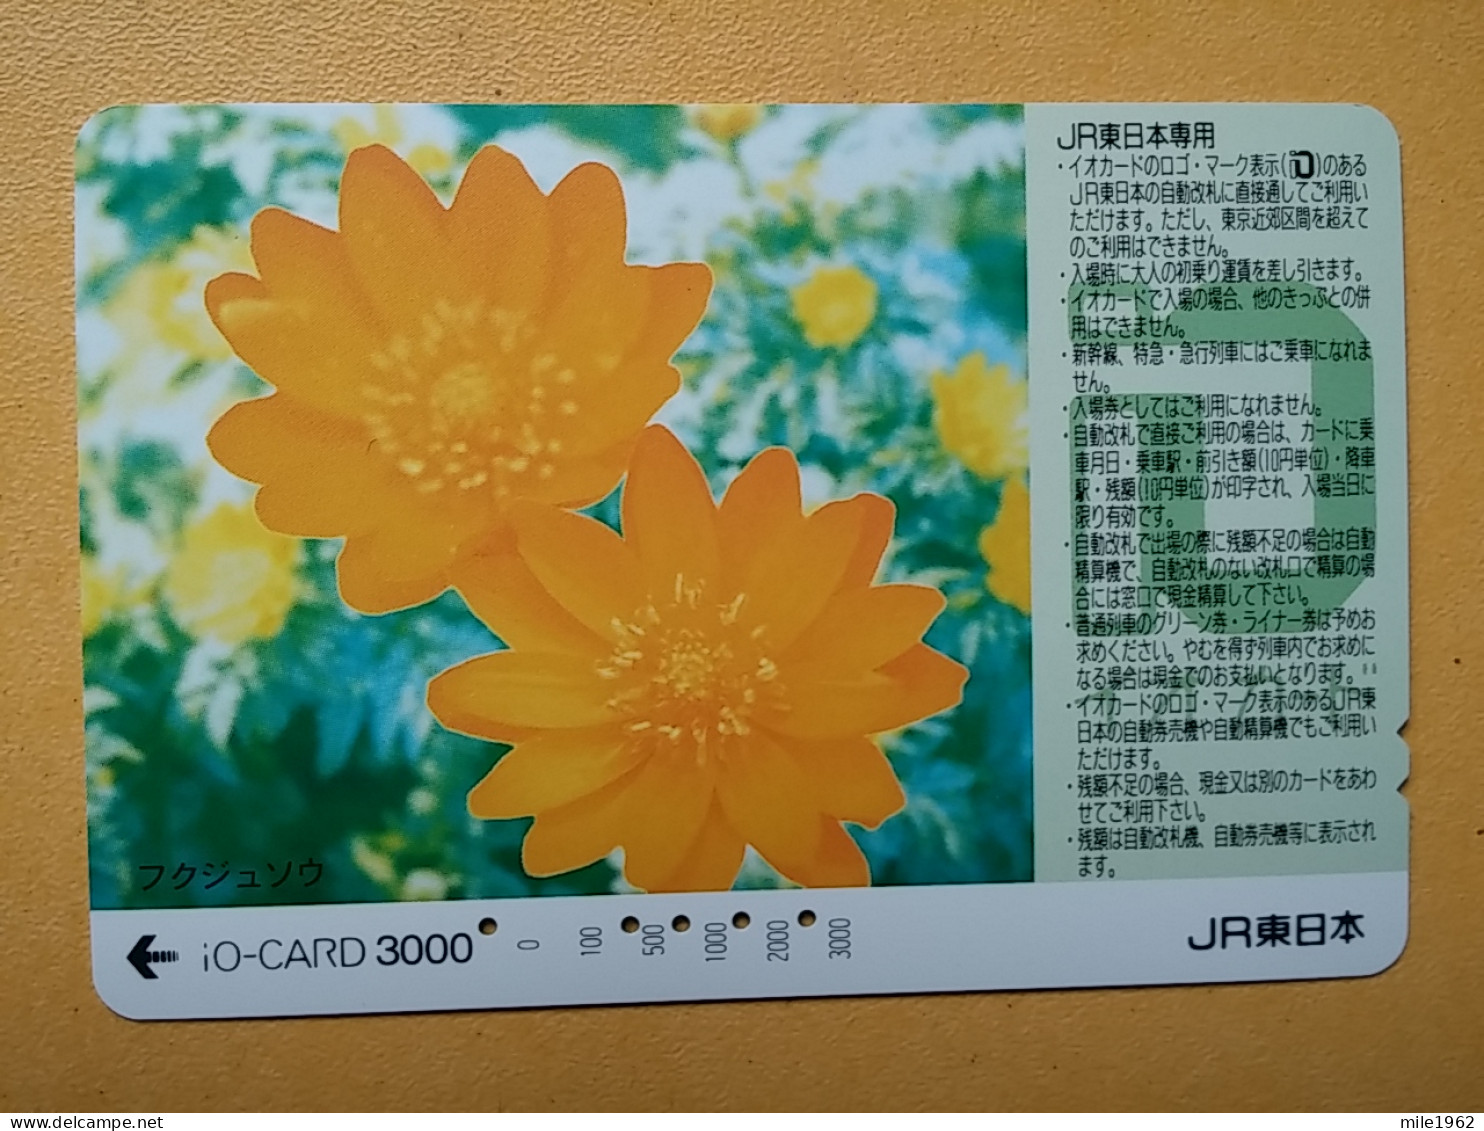 T-446 - JAPAN, Japon, Nipon, Carte Prepayee, Prepaid Card, FLOWER, FLEUR - Bloemen